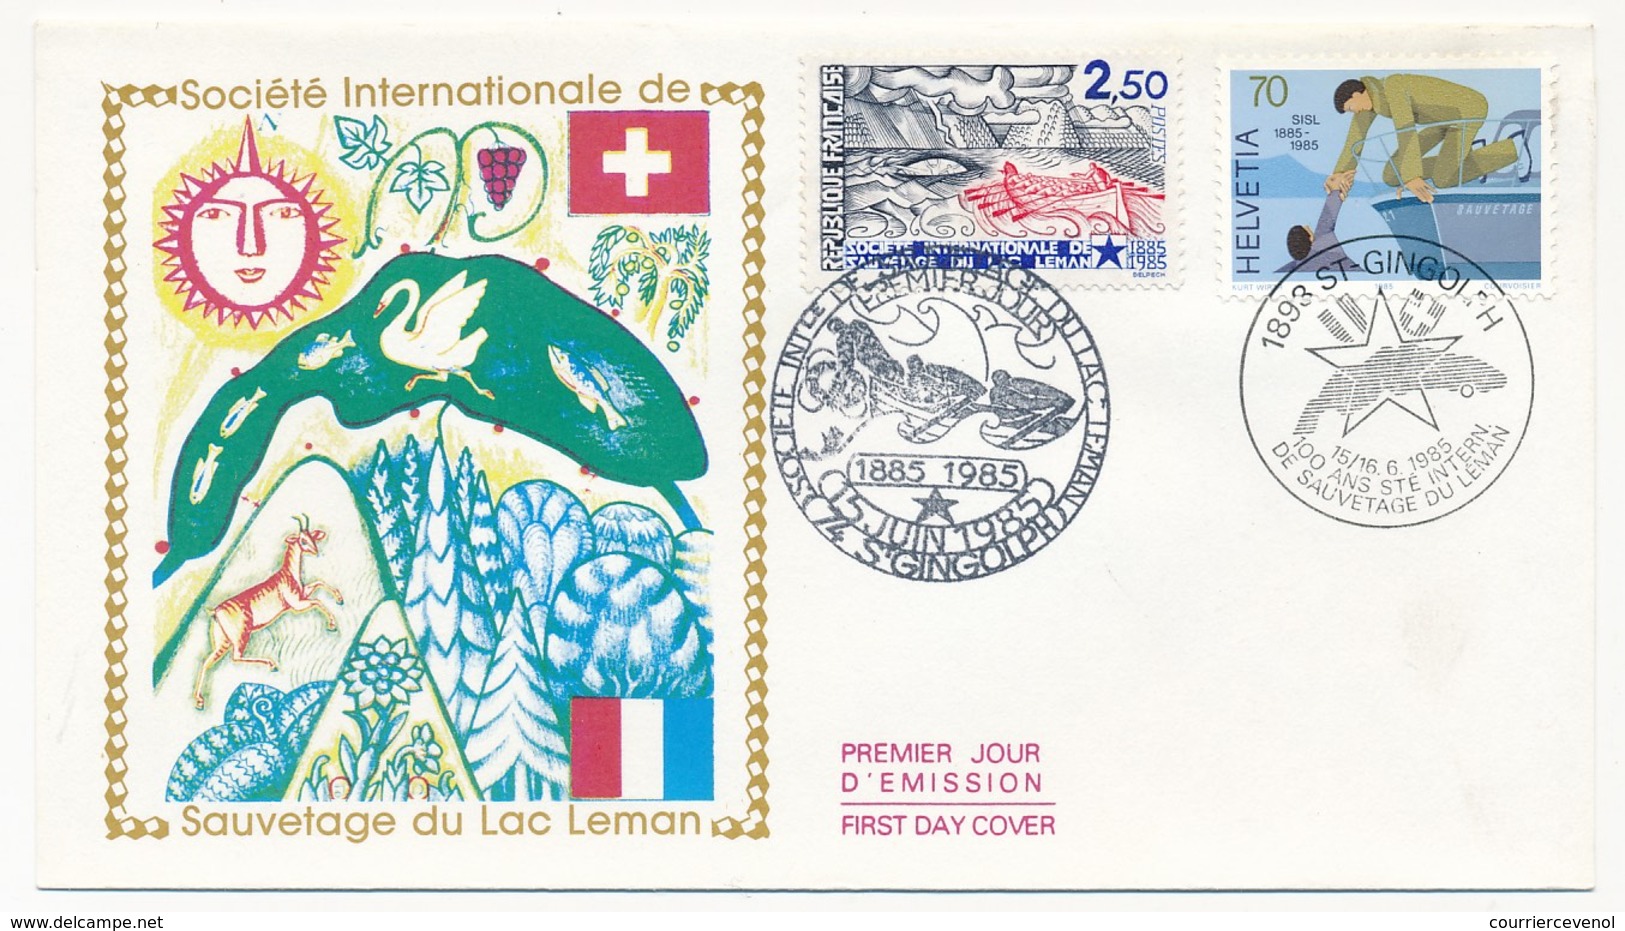 2 Enveloppes FDC Emission Commune France/Suisse - Société De Sauvetage Du Léman - 1985 - Joint Issues